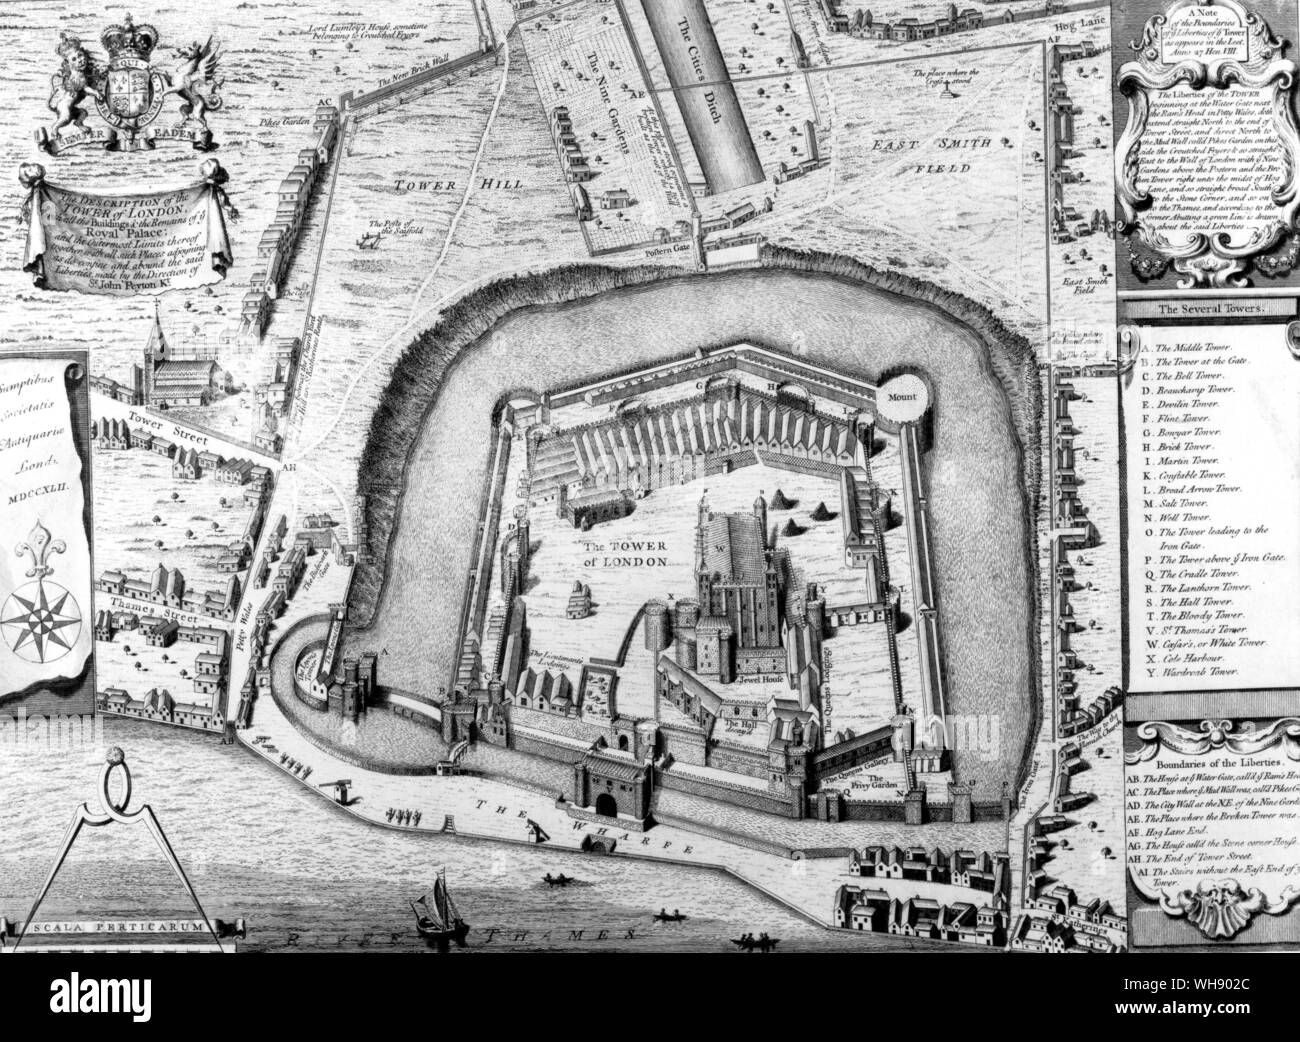 Der Tower von London - Luftbild plan Stockfoto